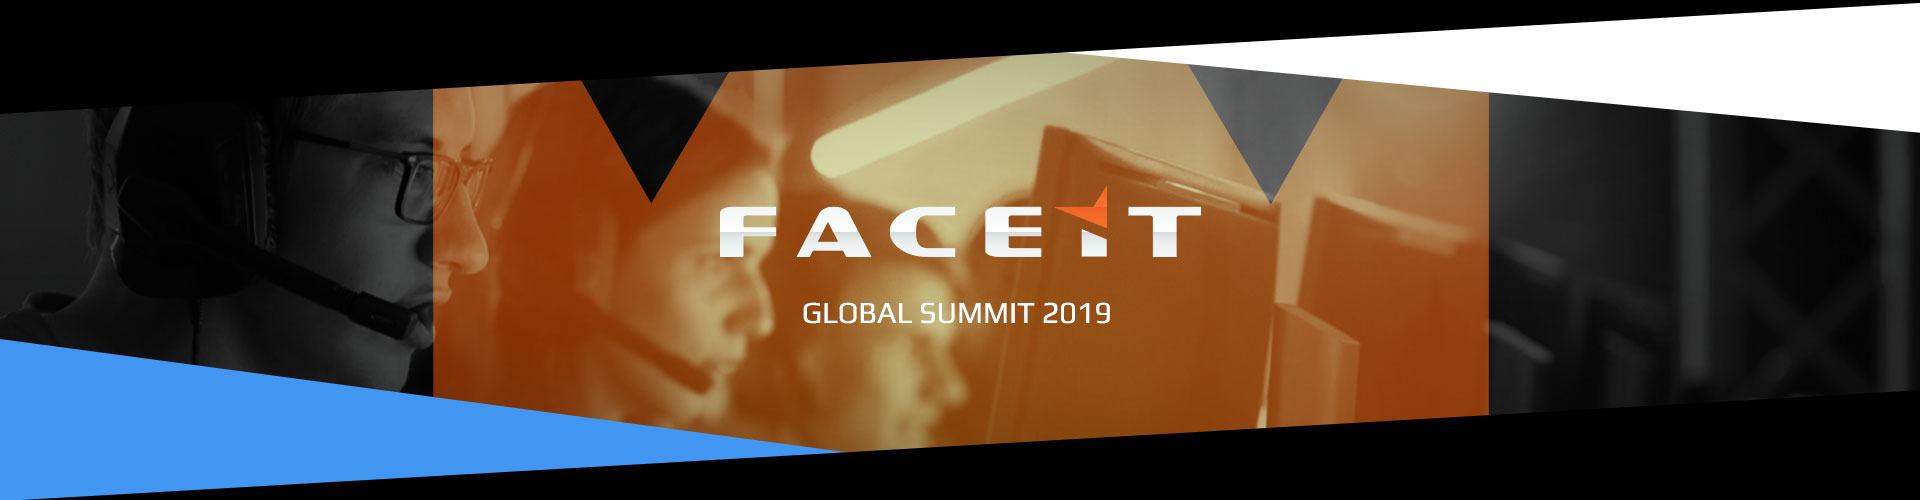 Faceit Global Summit 4. päivä - Pudotuskierros